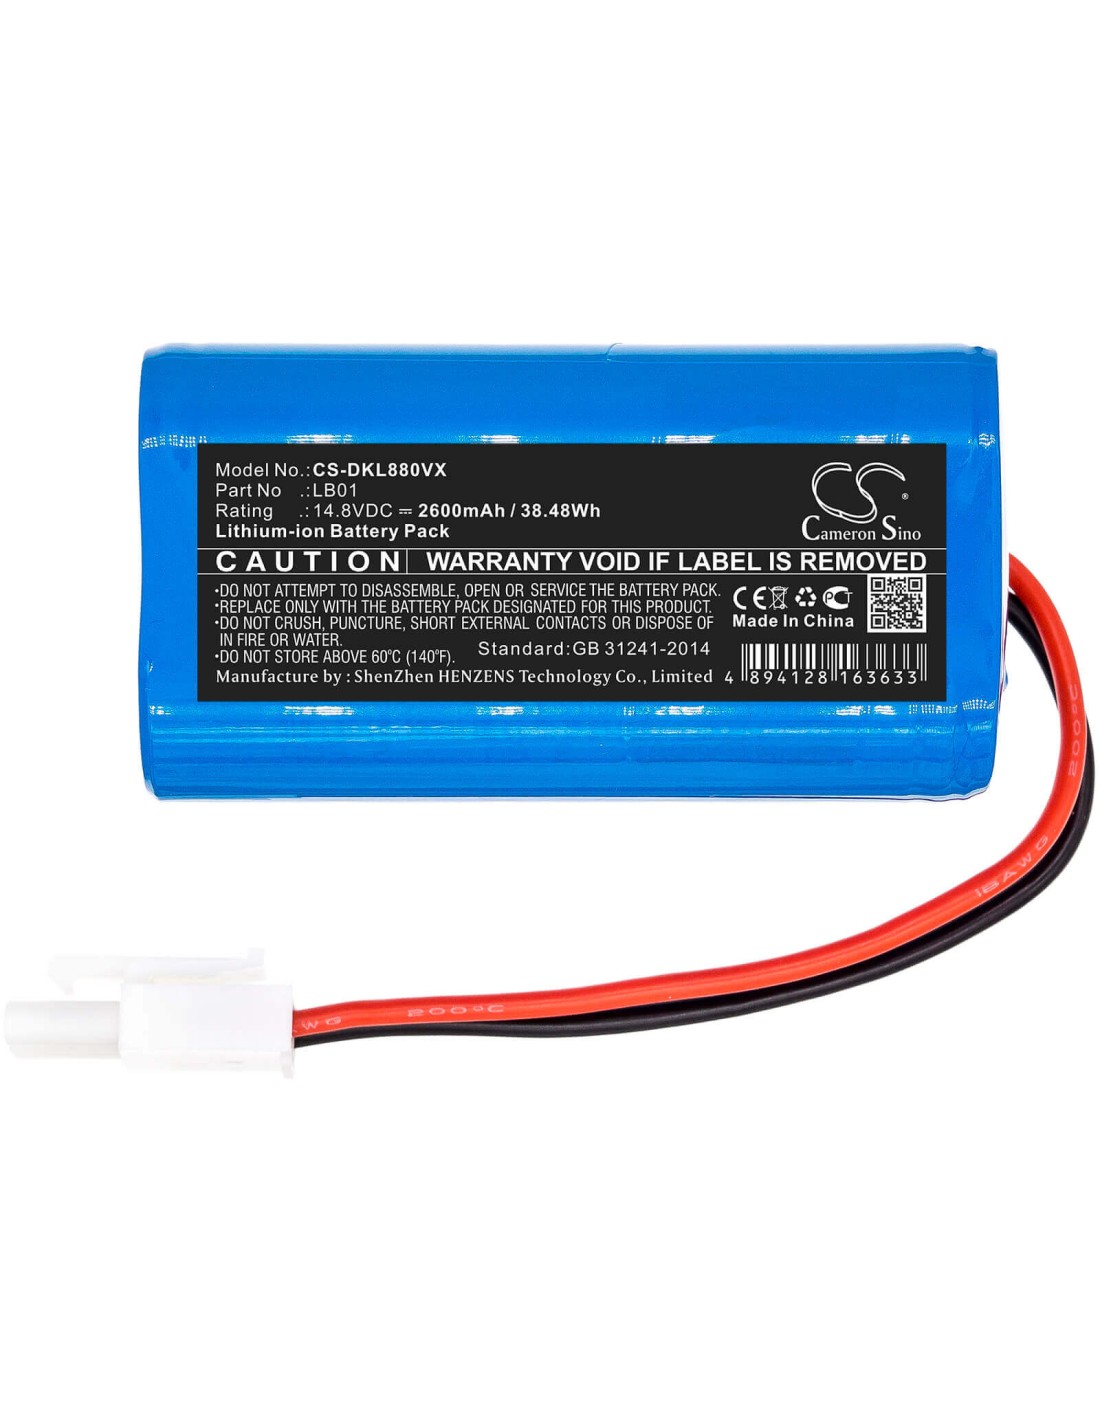 Battery for Donkey, Dl880 14.8V, 2600mAh - 38.48Wh